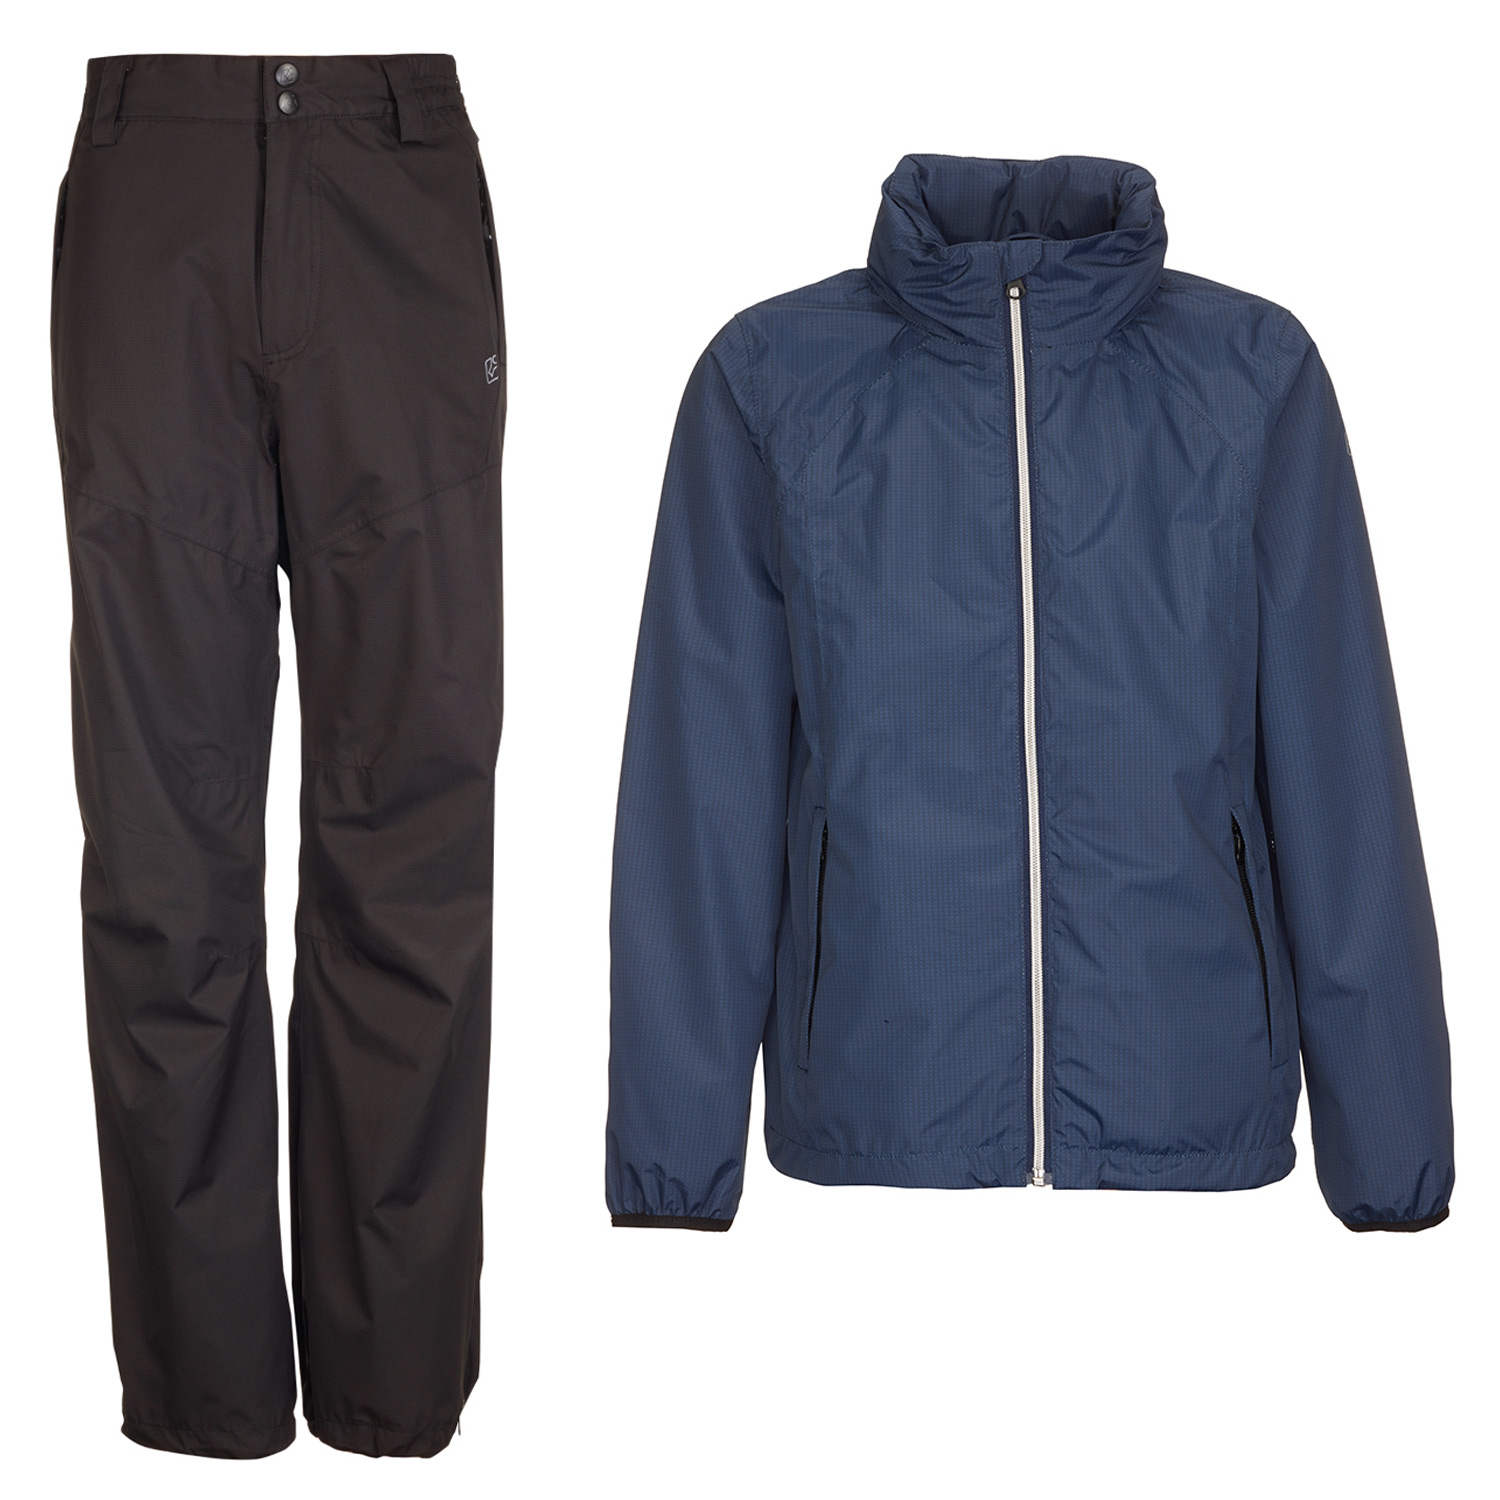 Kinder Regenanzug Gr. 116 Hose schwarz +Jacke blau Regenbekleidung für Kinder